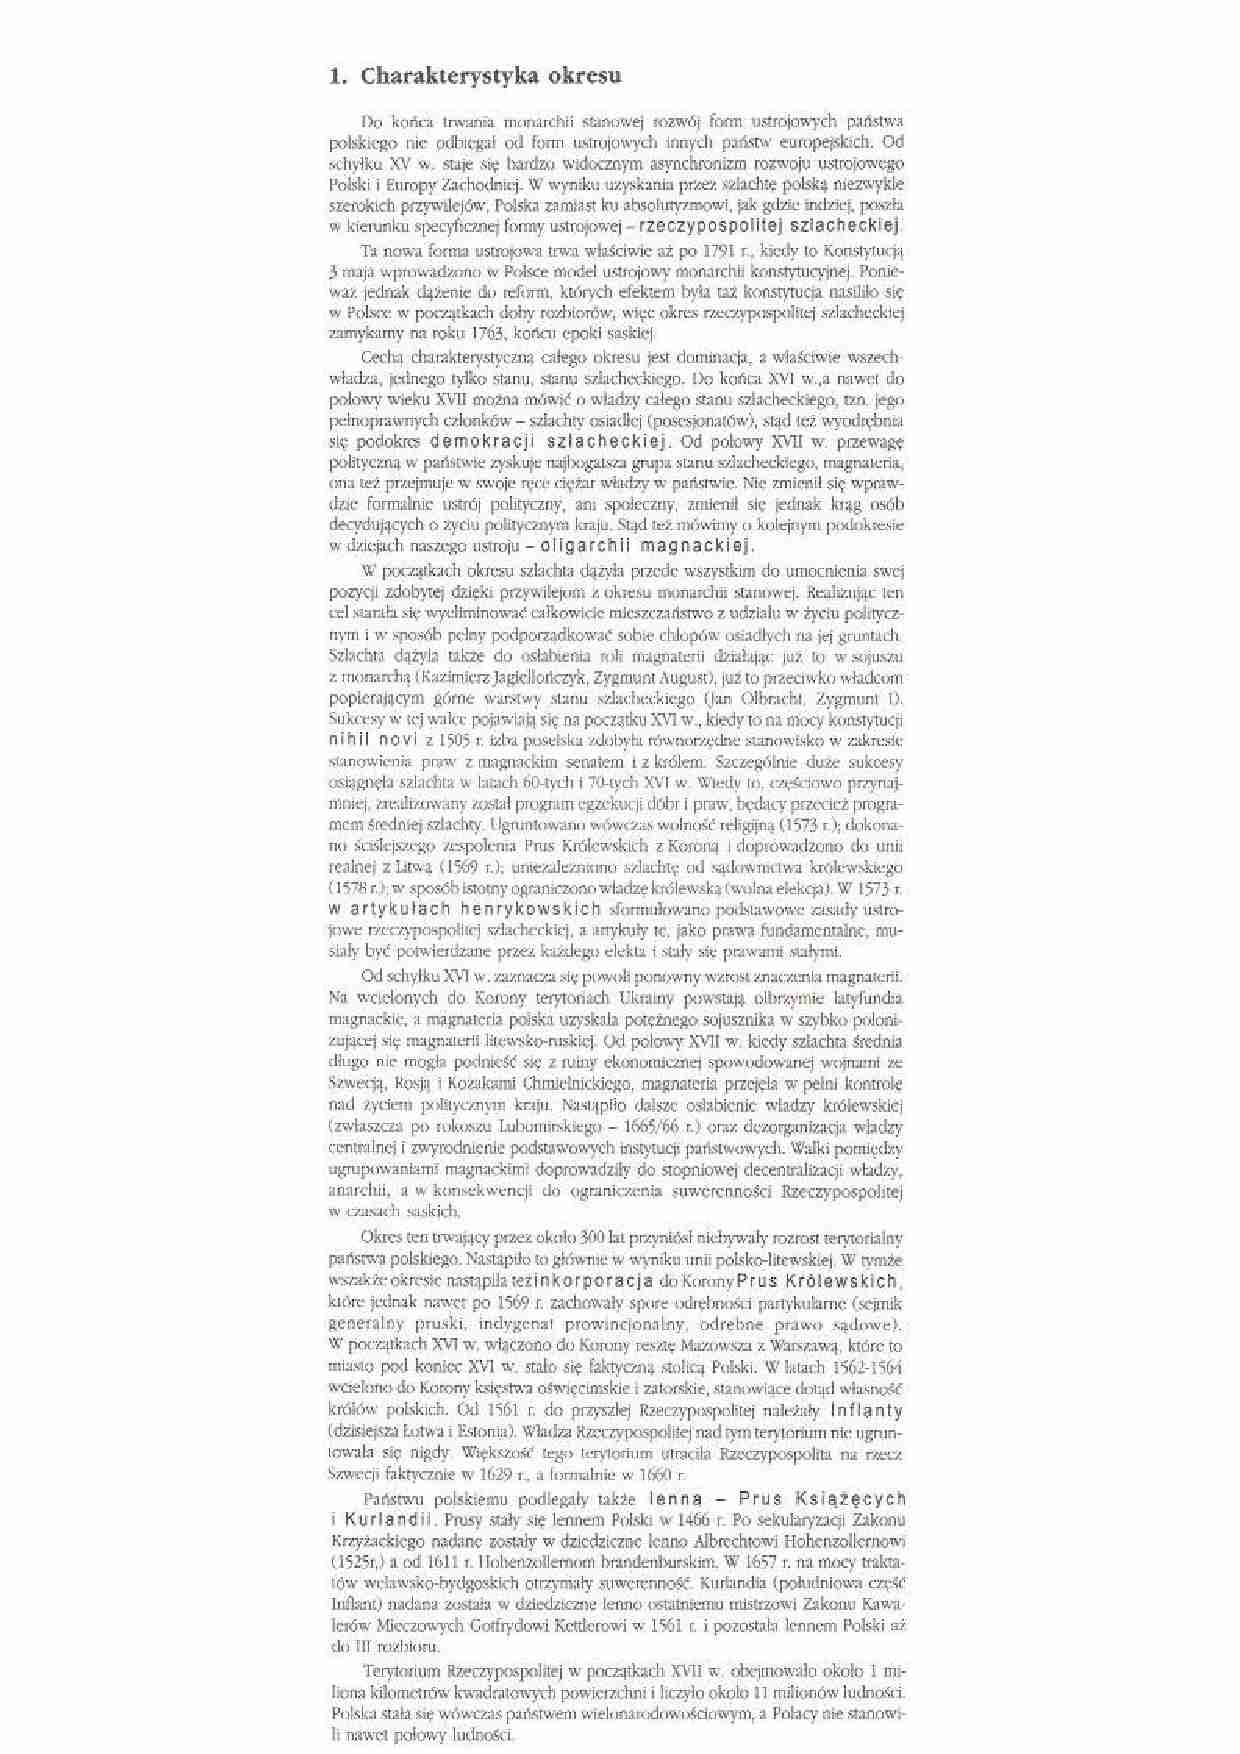 Rzeczpospolita szlachecka - charakterystyka okresu - strona 1